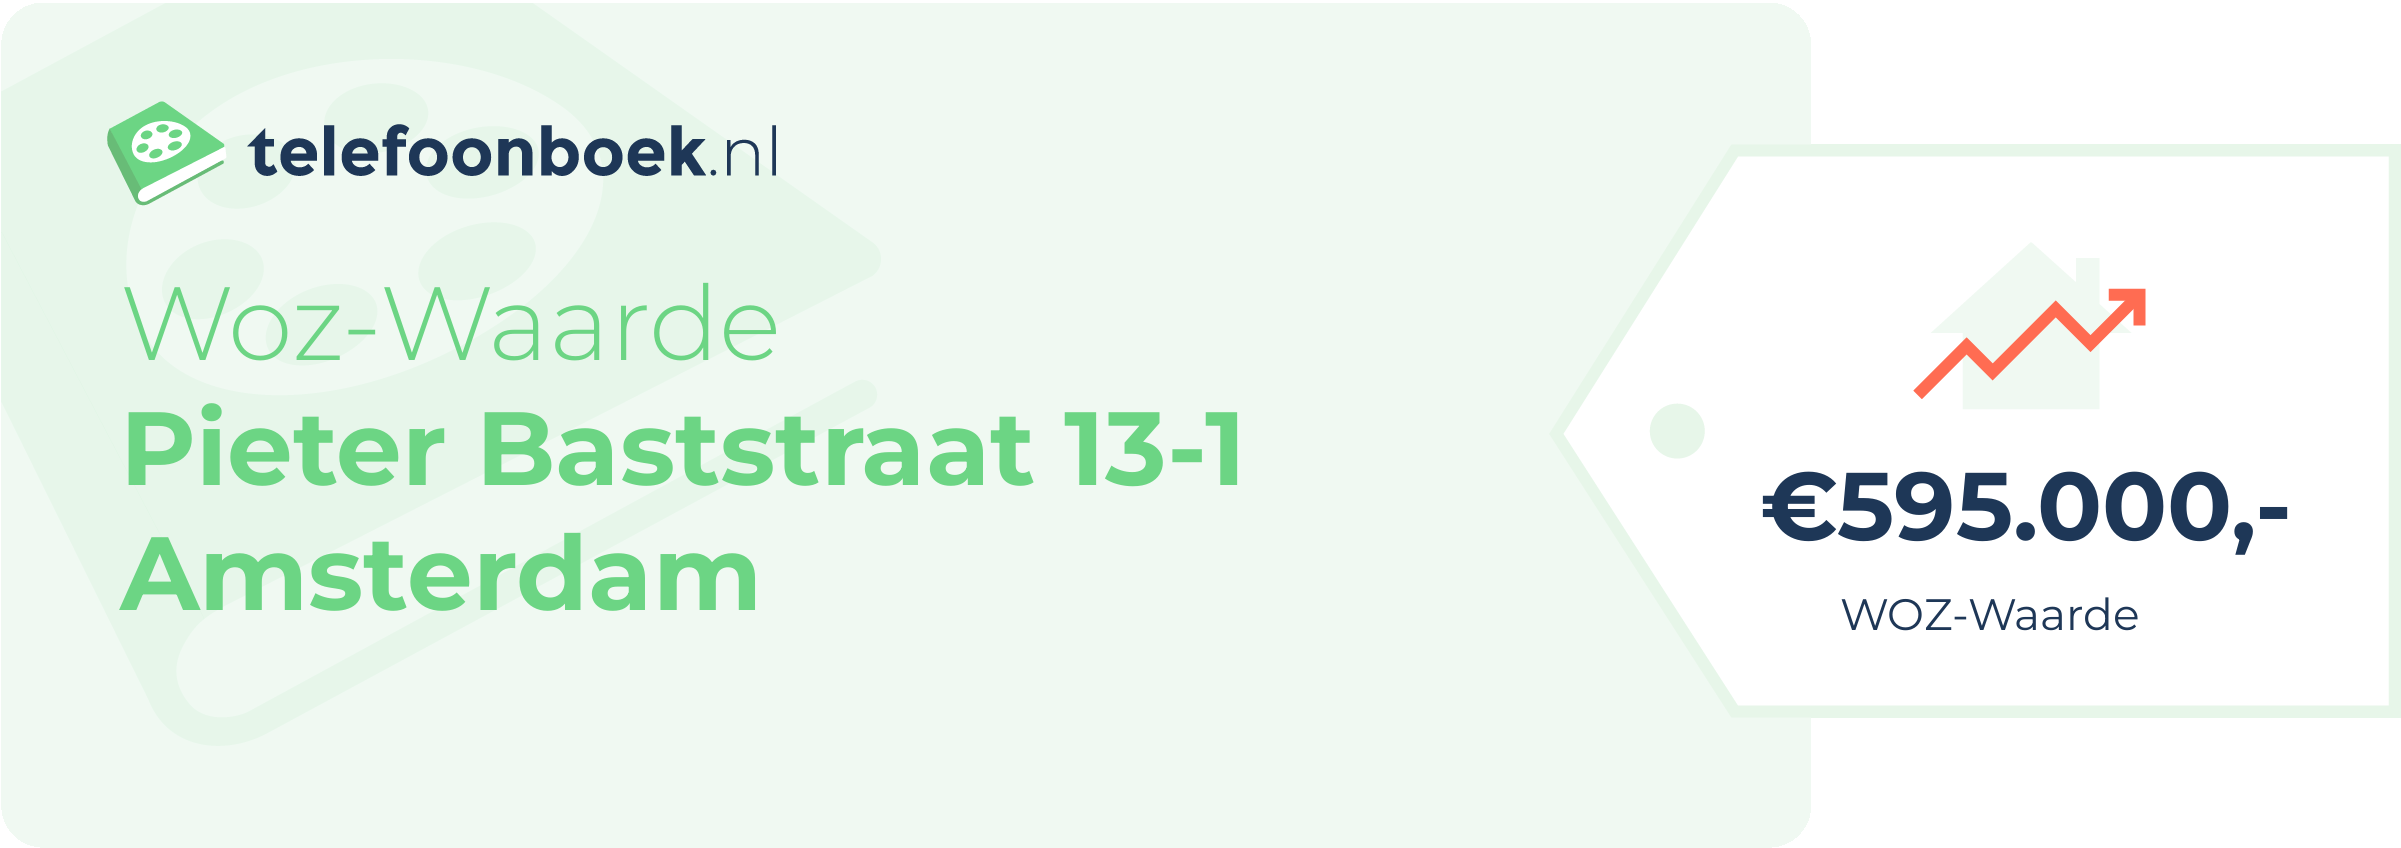 WOZ-waarde Pieter Baststraat 13-1 Amsterdam